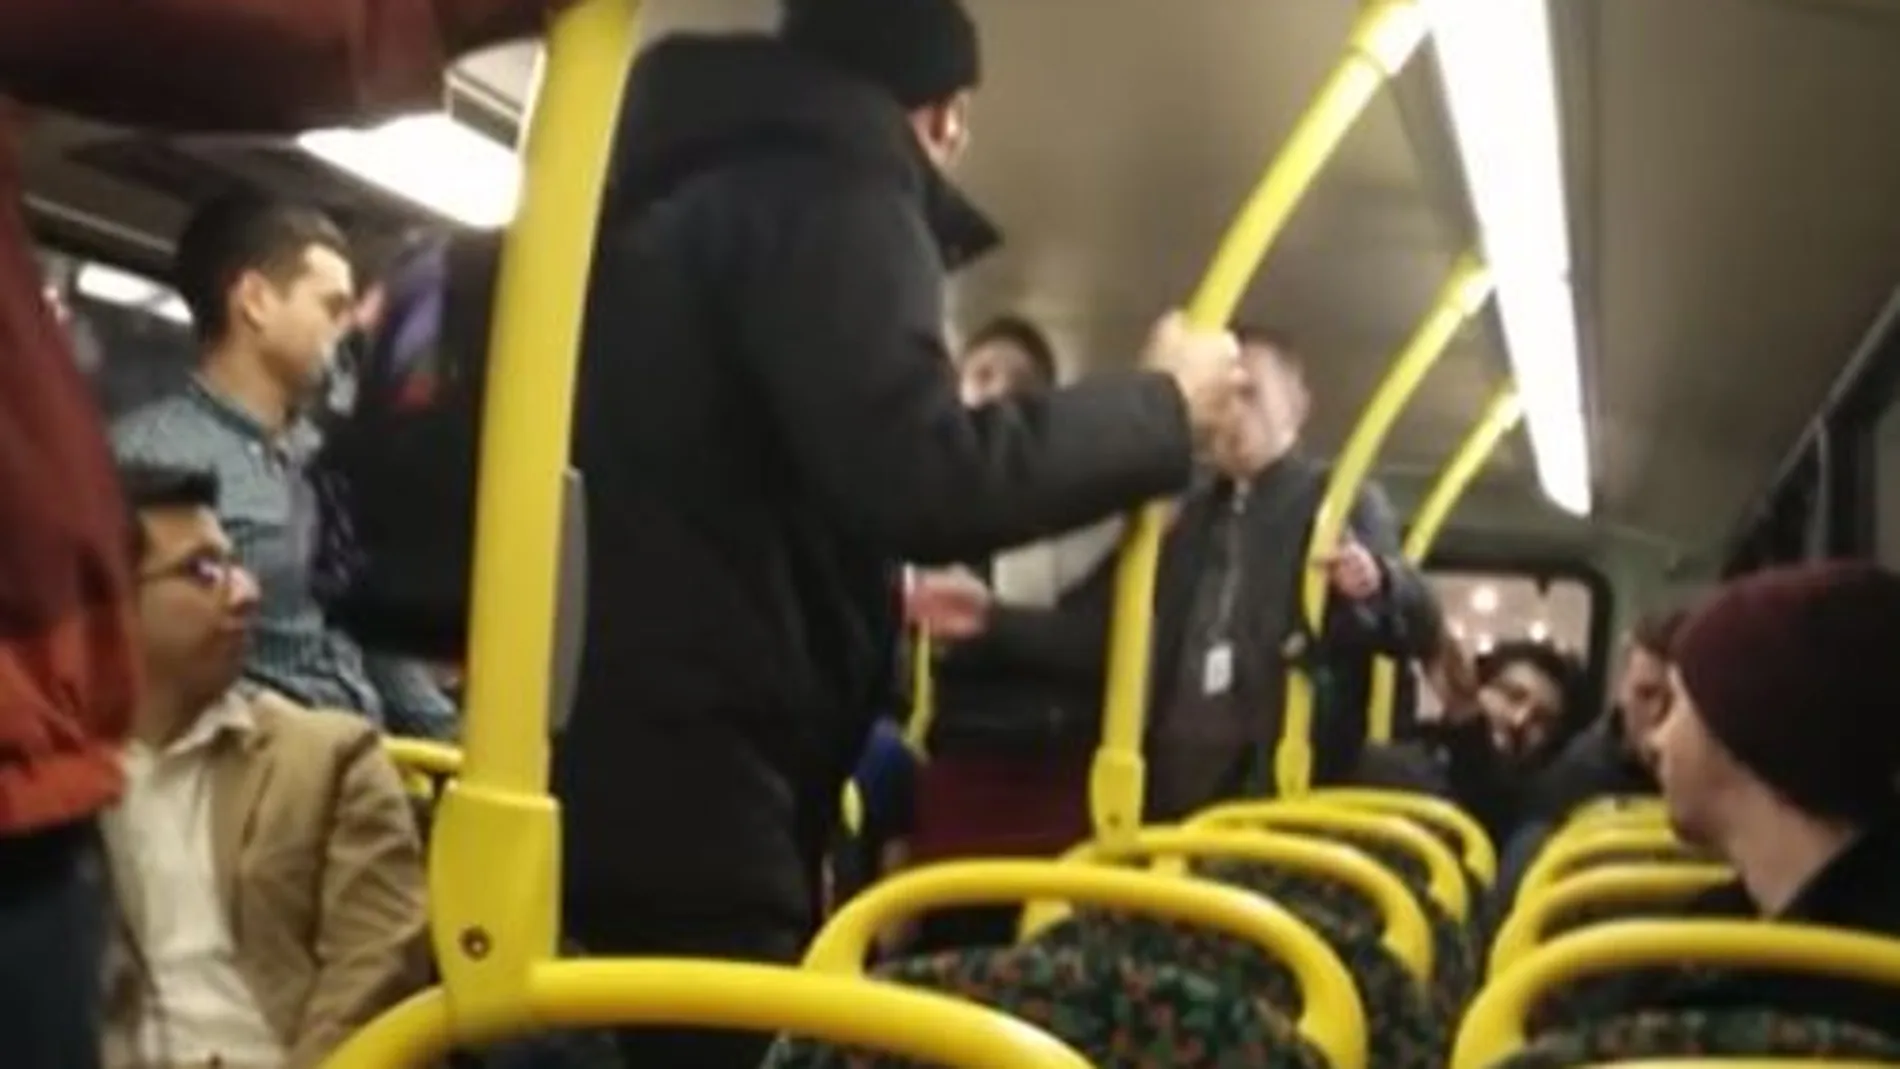 El joven español, de negro y con gorro, se enfrenta a sus agresores en el autobús